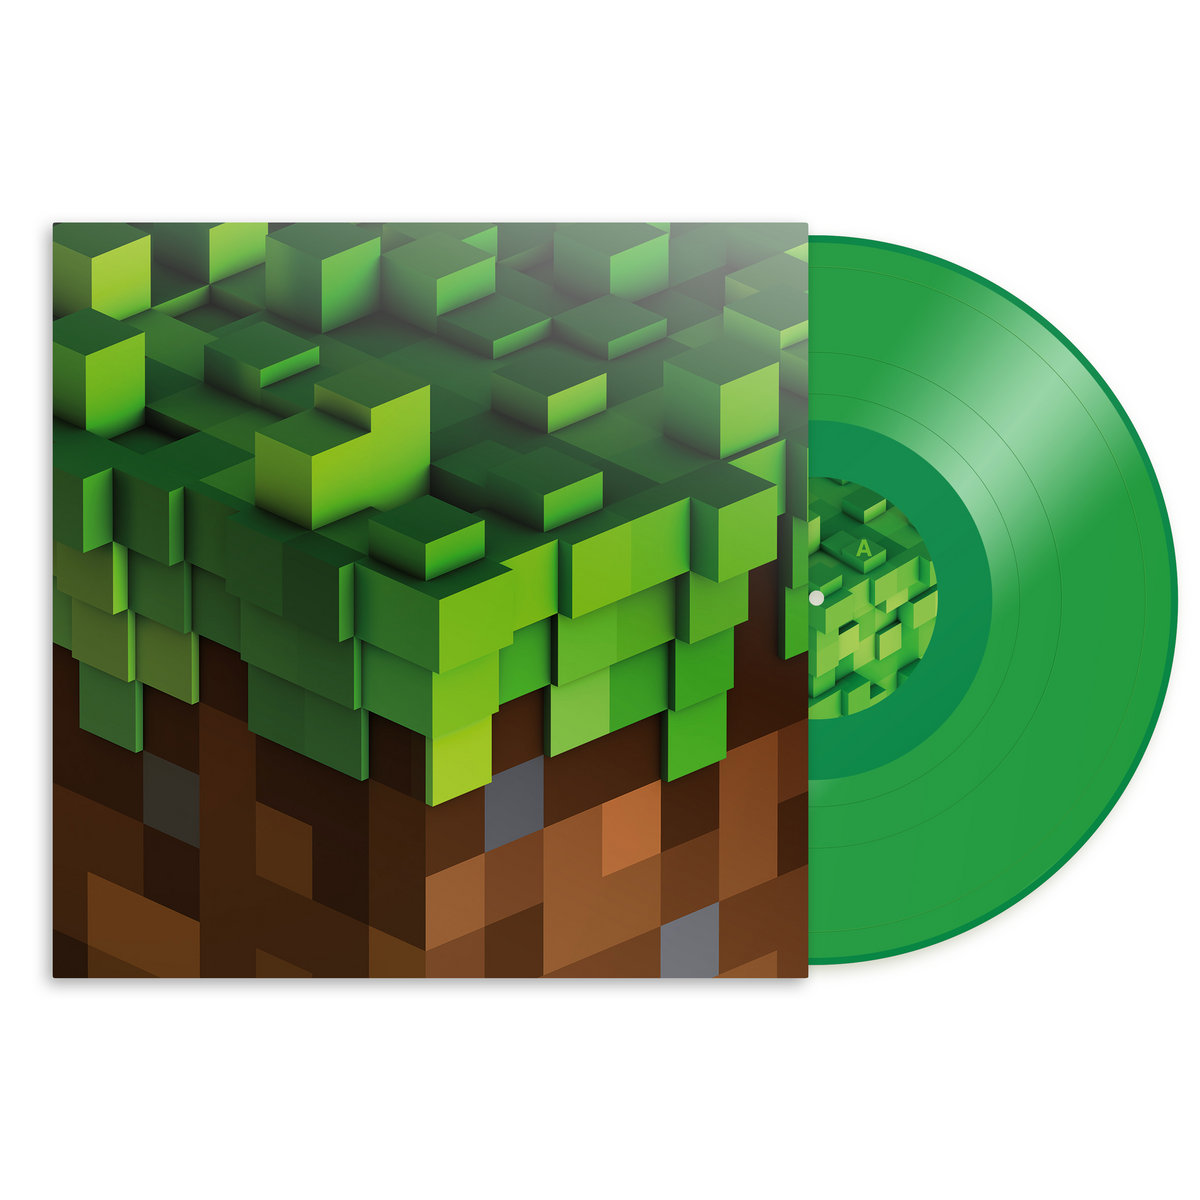 마인크래프트 볼륨 알파 게임음악 (Minecraft Volume Alpha OST by C418) [투명 그린 컬러 LP]